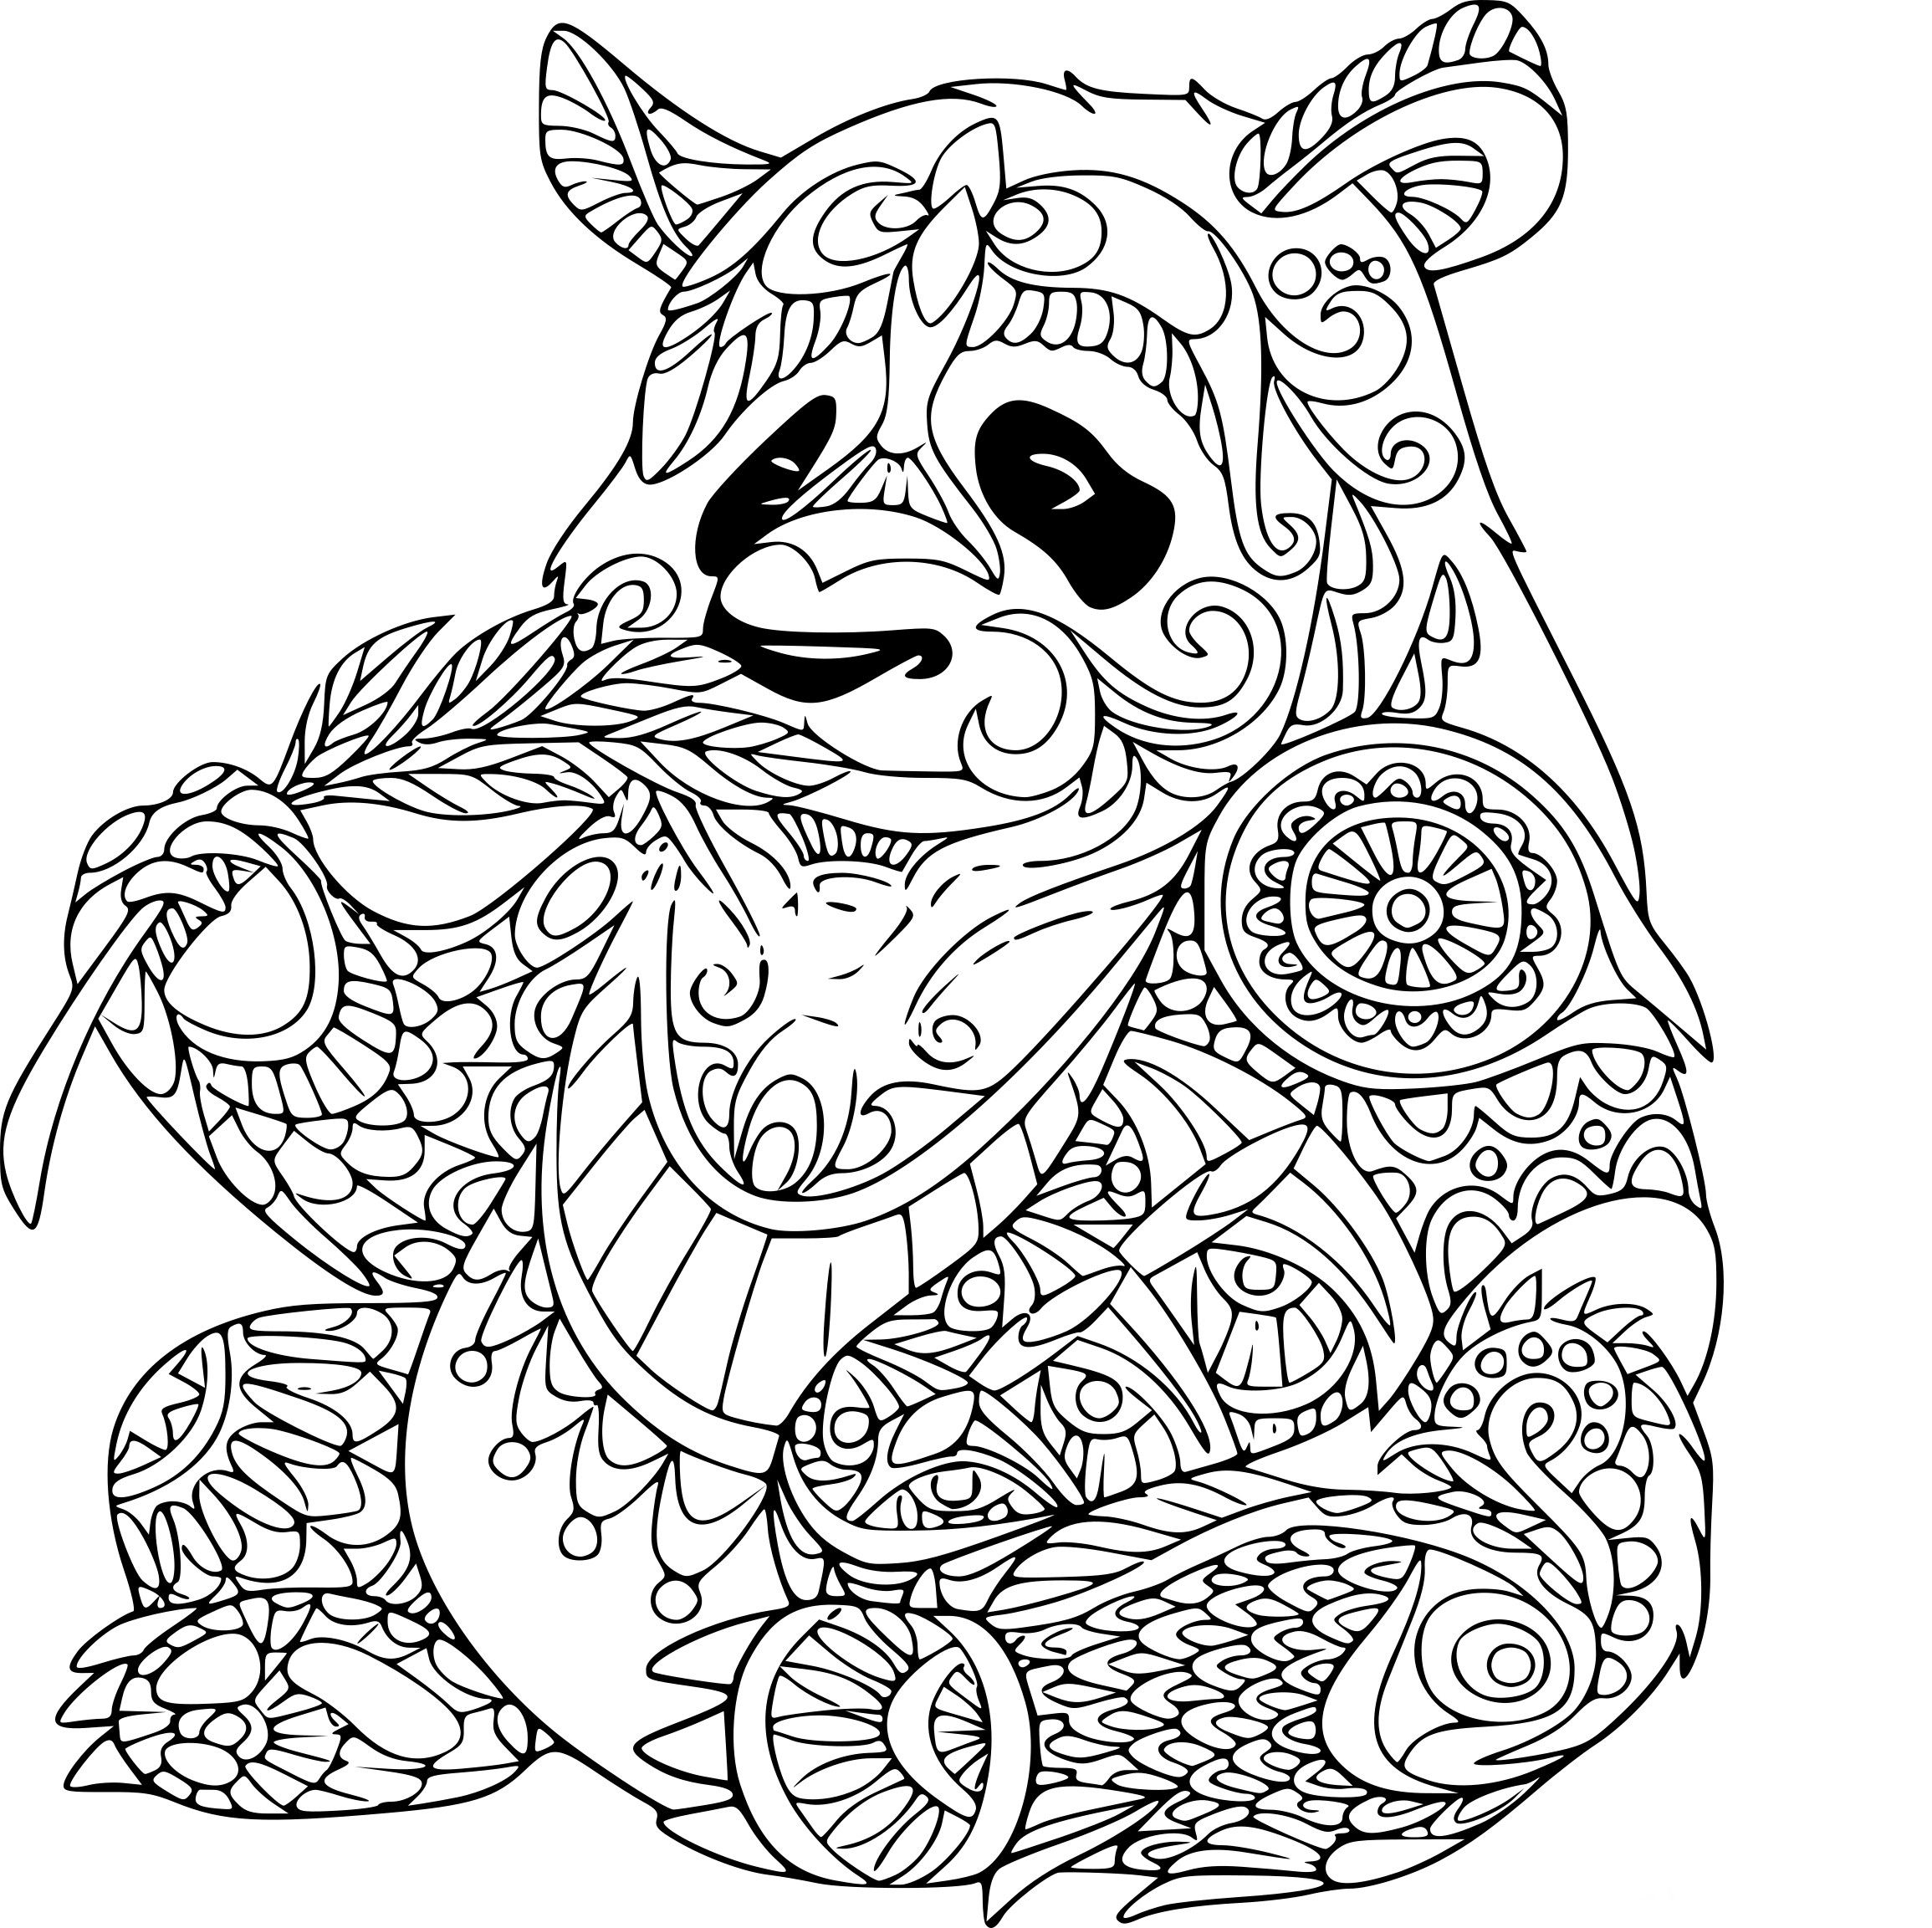 Coloriages À Imprimer : Panda, Numéro : 762A833B tout Coloriage Adulte À Imprimer